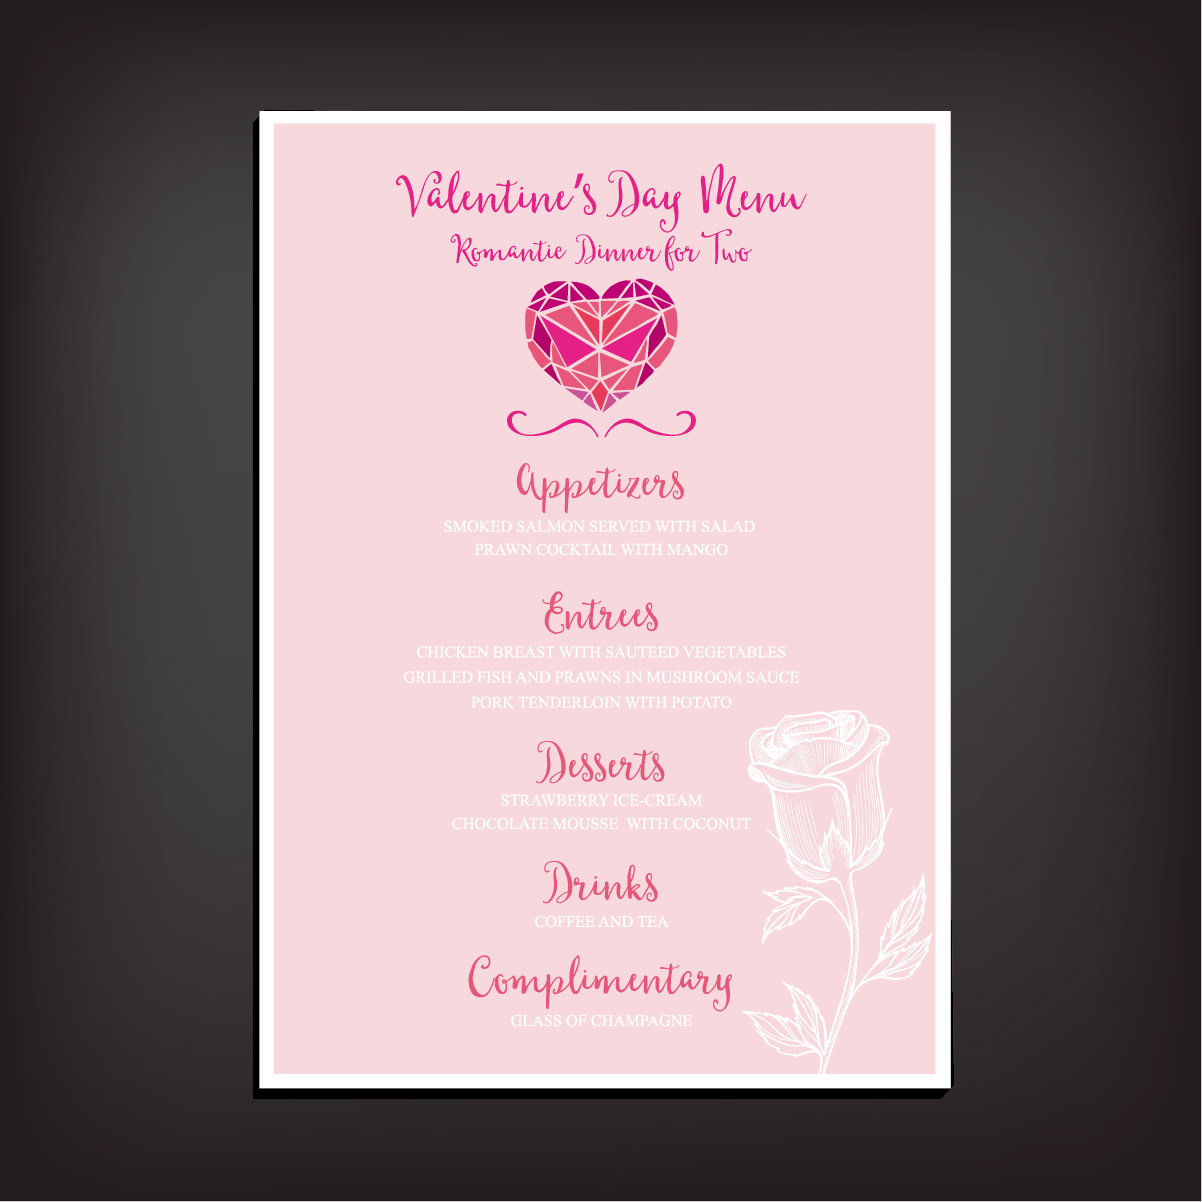 Valentines day restaurant menu vintage vector 02 vintage valentines restaurant menu   